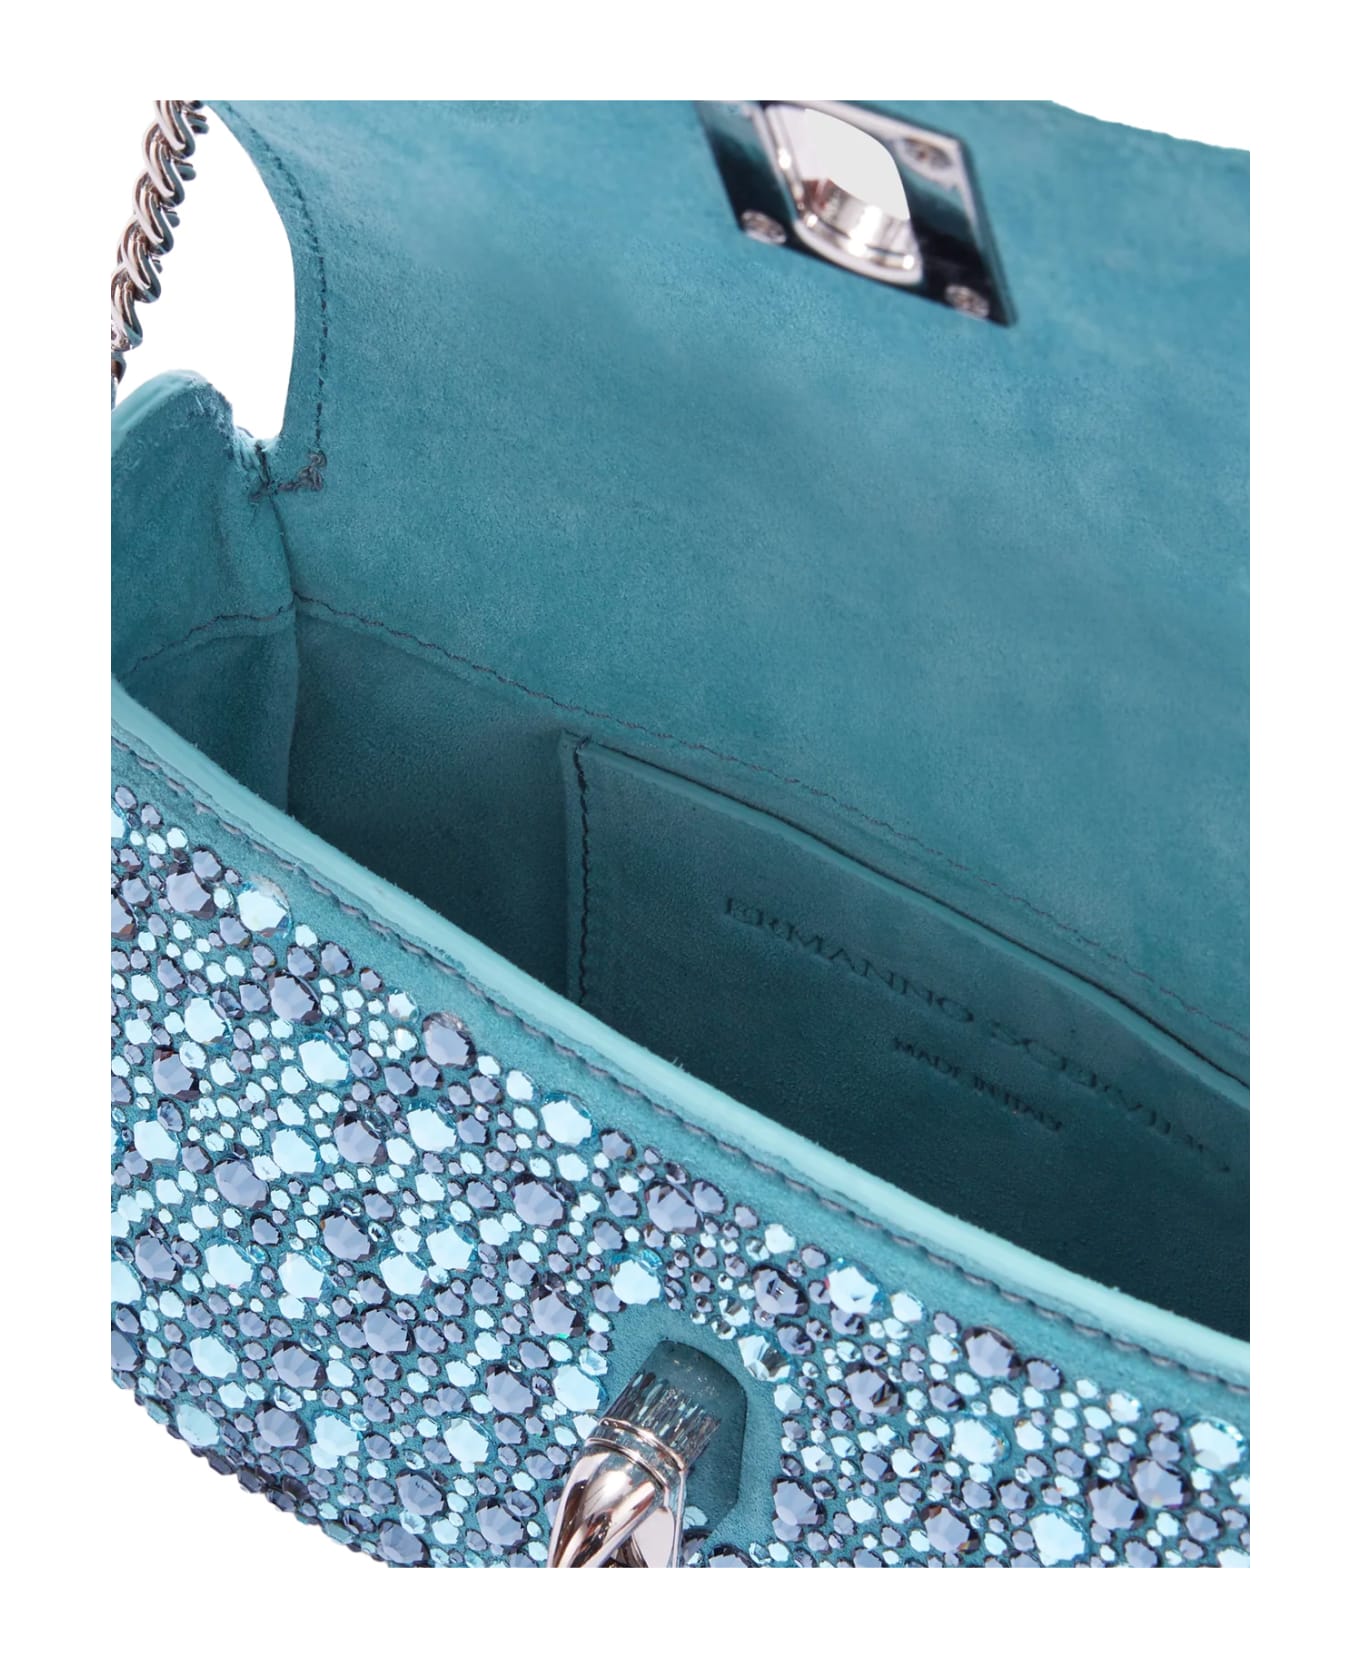 Ermanno Scervino Light Blue Audrey Bag With Crystals - Blue